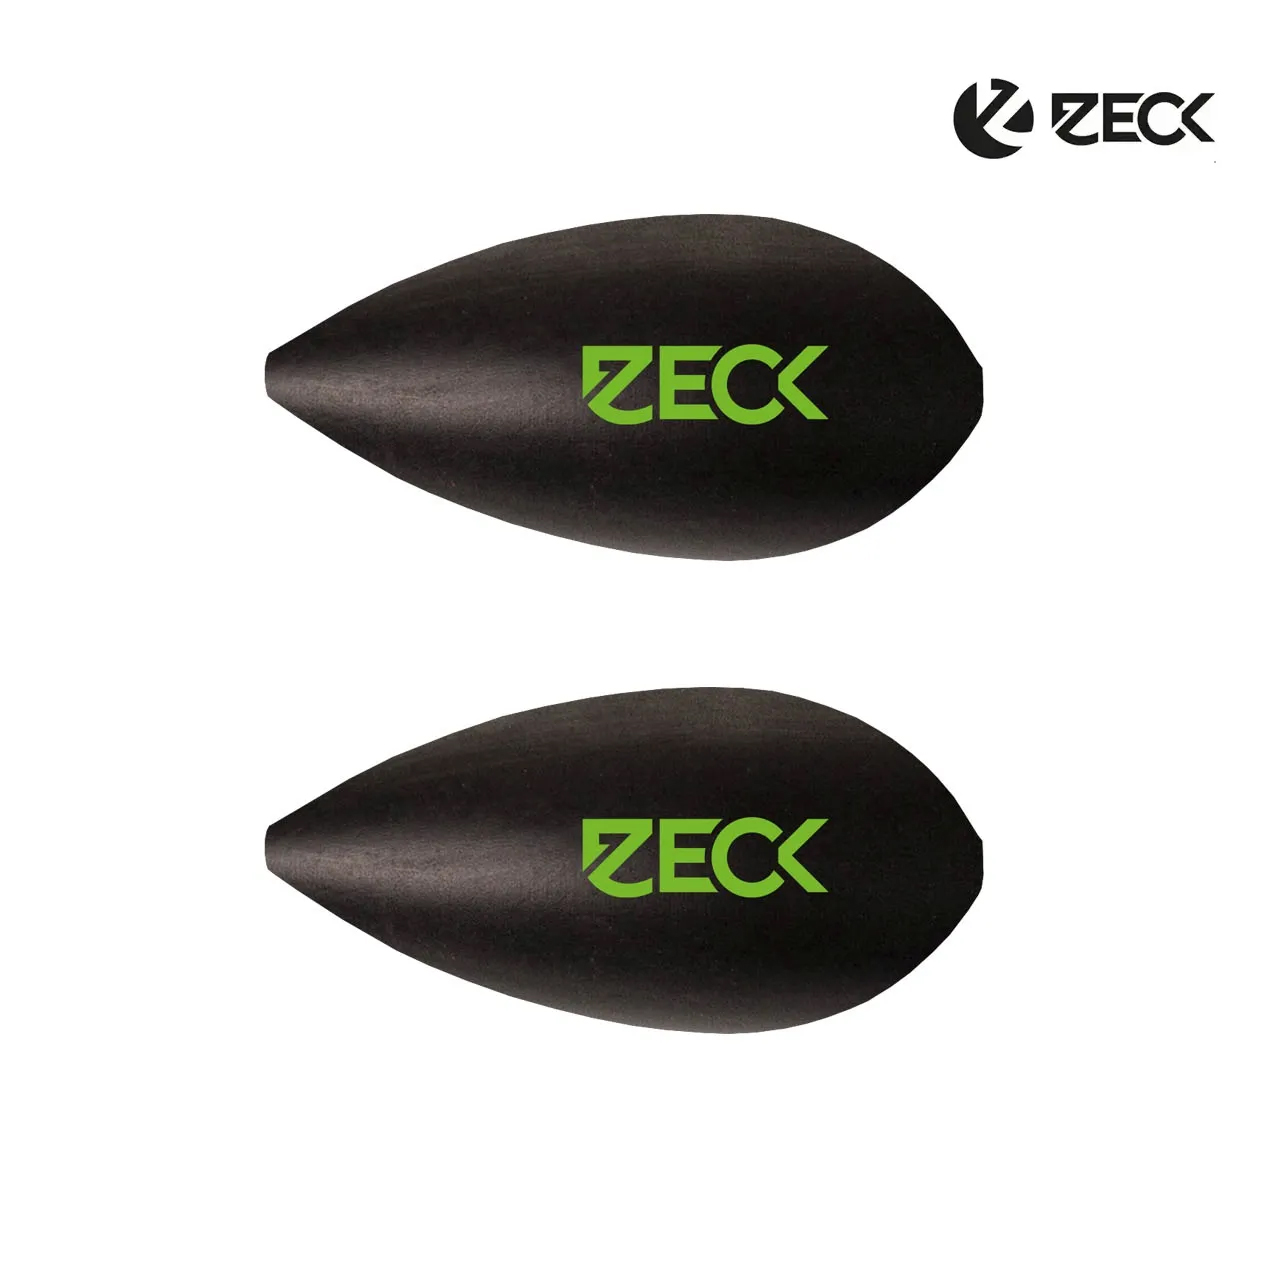 Zeck Leader Float Black 2g